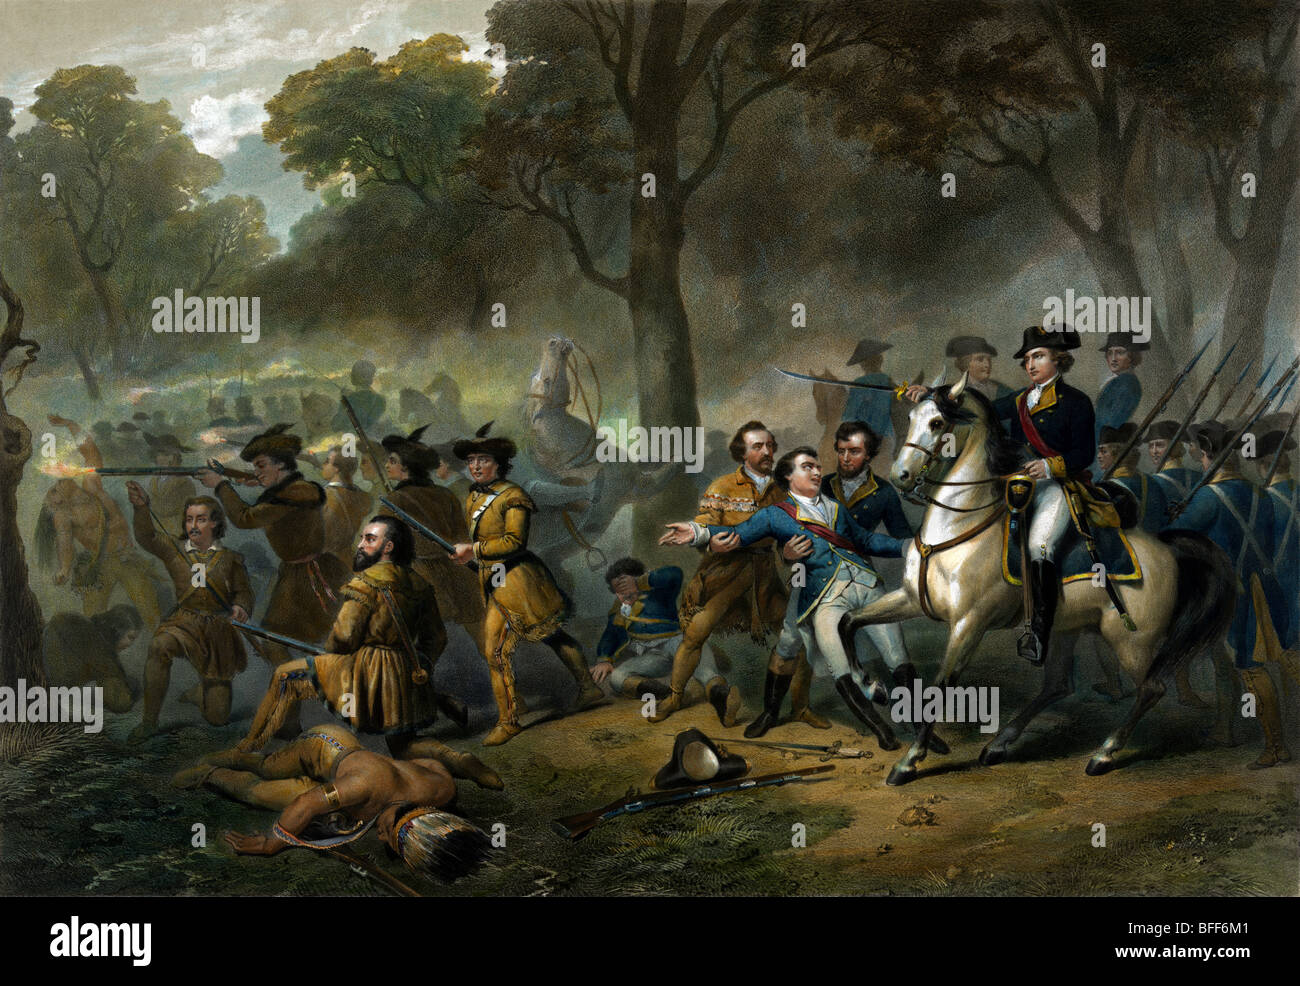 Stampa raffigurante il futuro presidente degli Stati Uniti George Washington, a cavallo, in azione durante la Battaglia di Monongahela nel 1755. Foto Stock